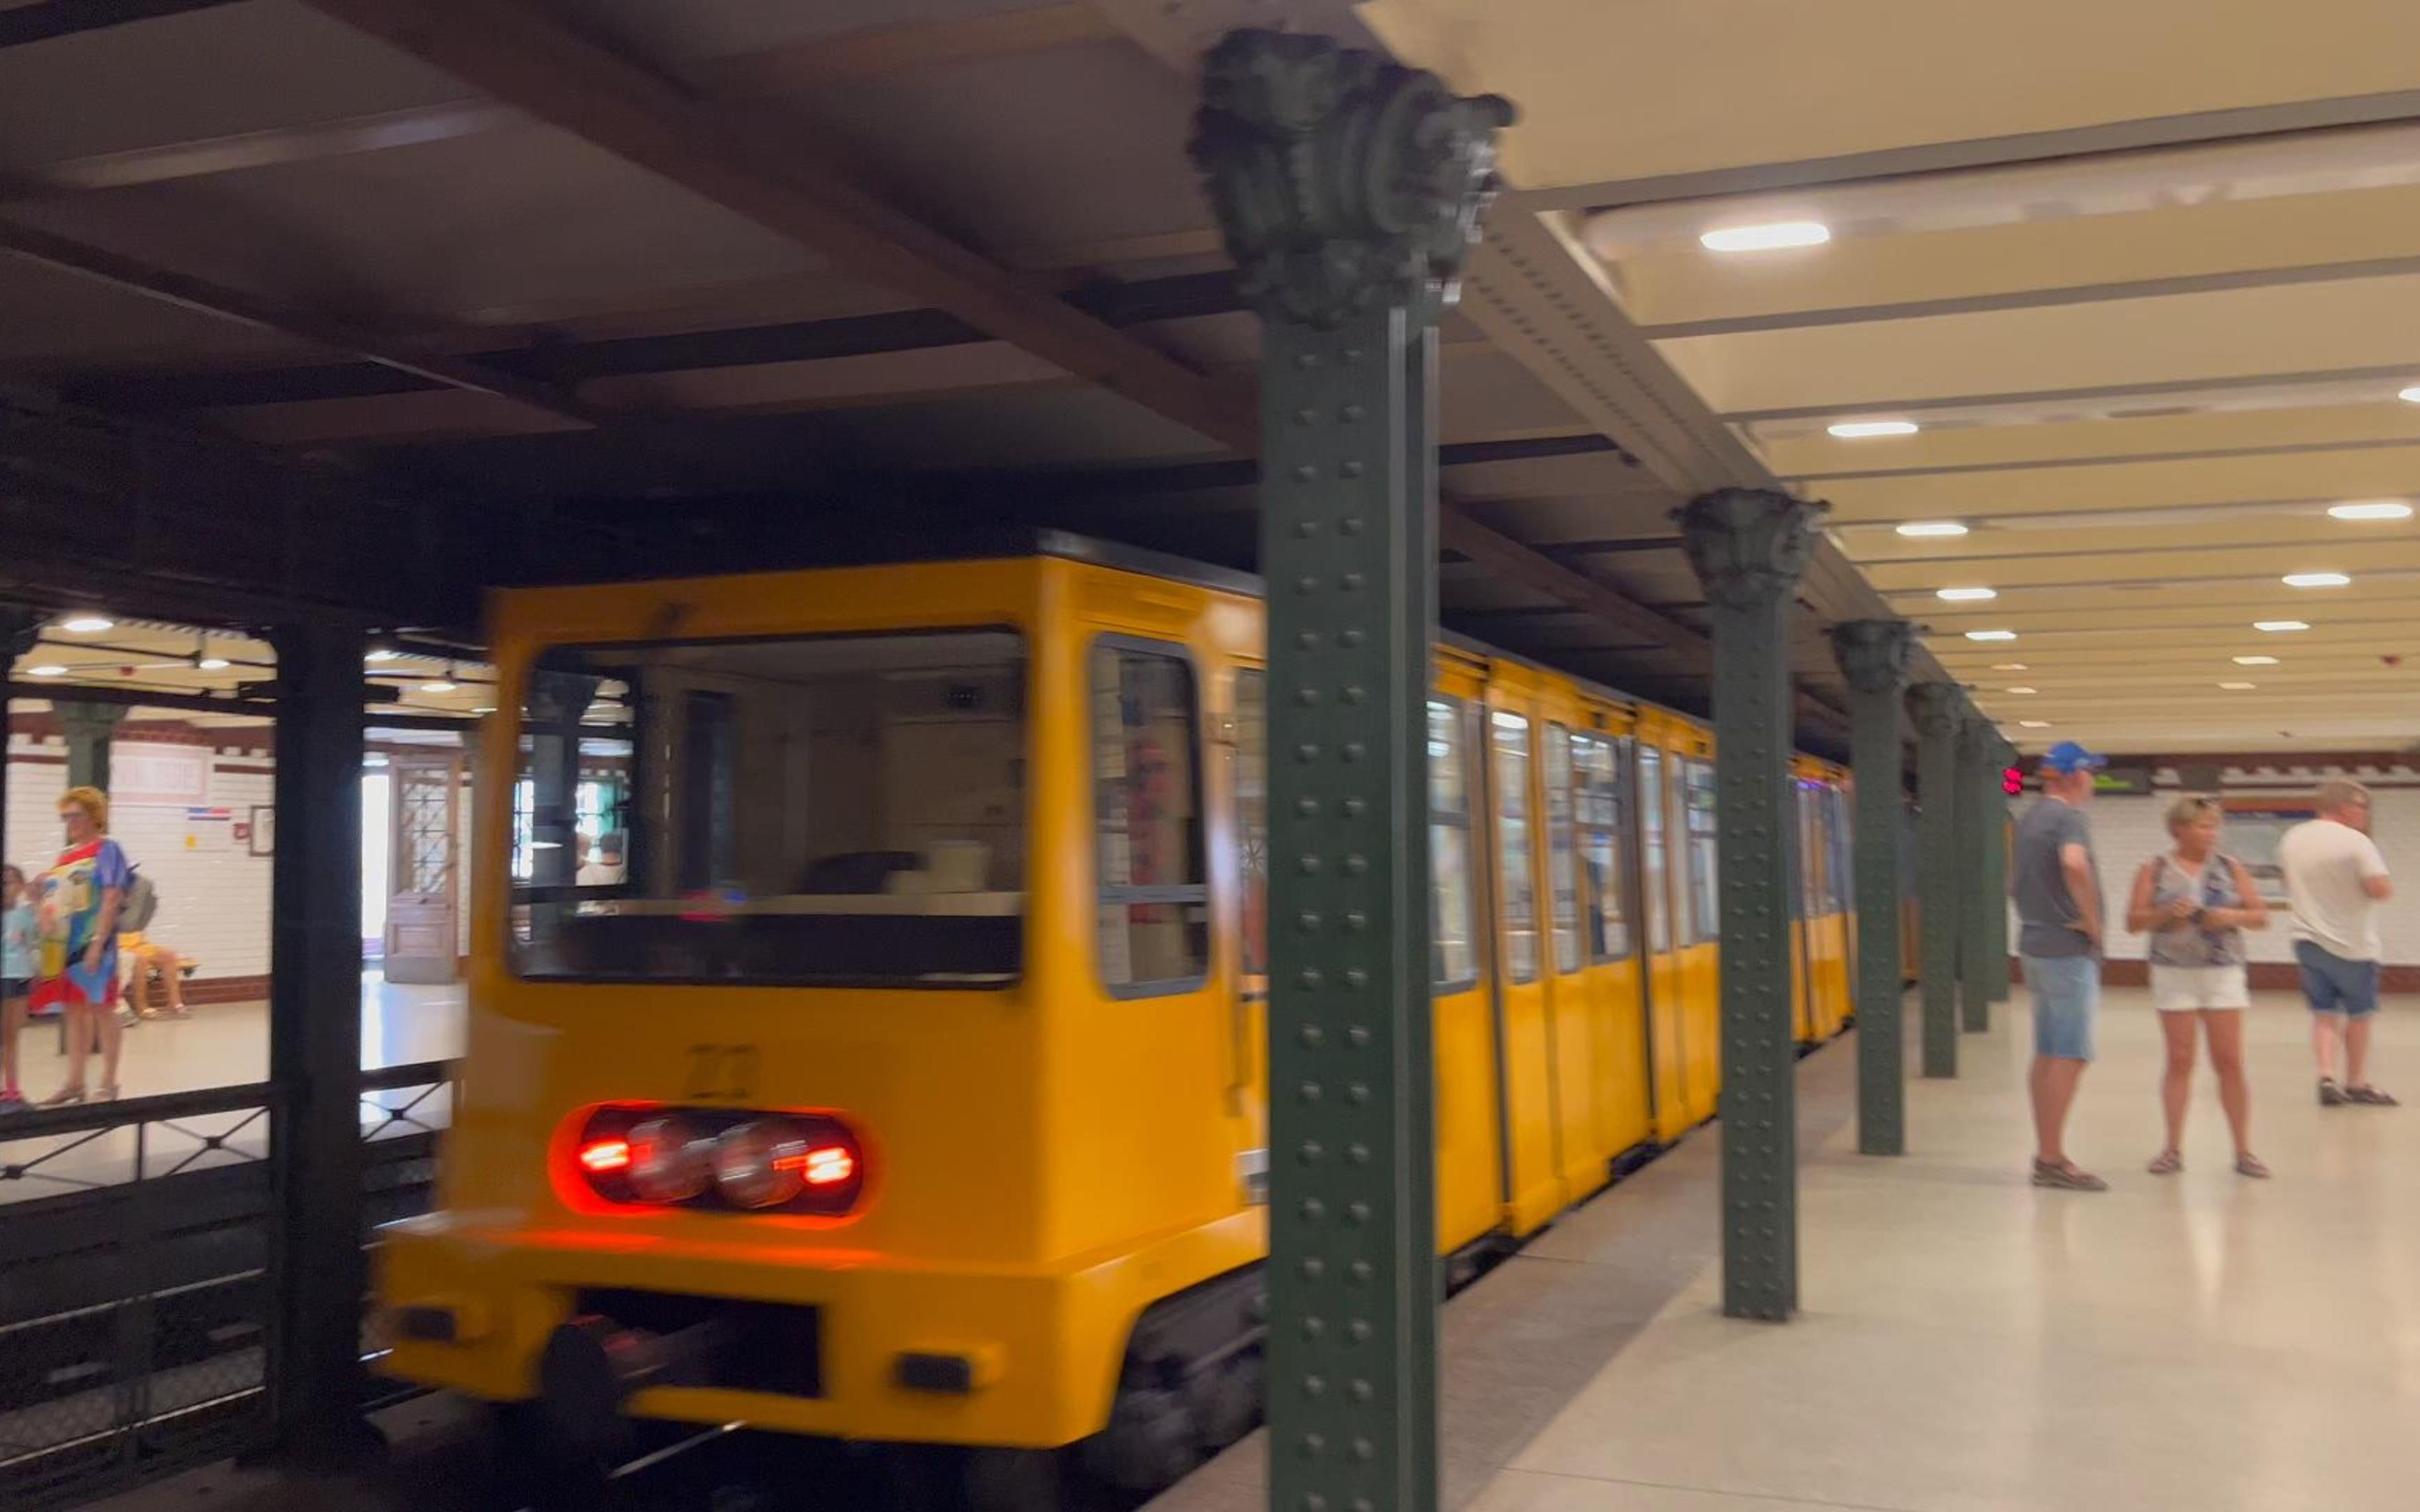 匈牙利 布达佩斯 最老地铁一号线 建于1894年 明挖法